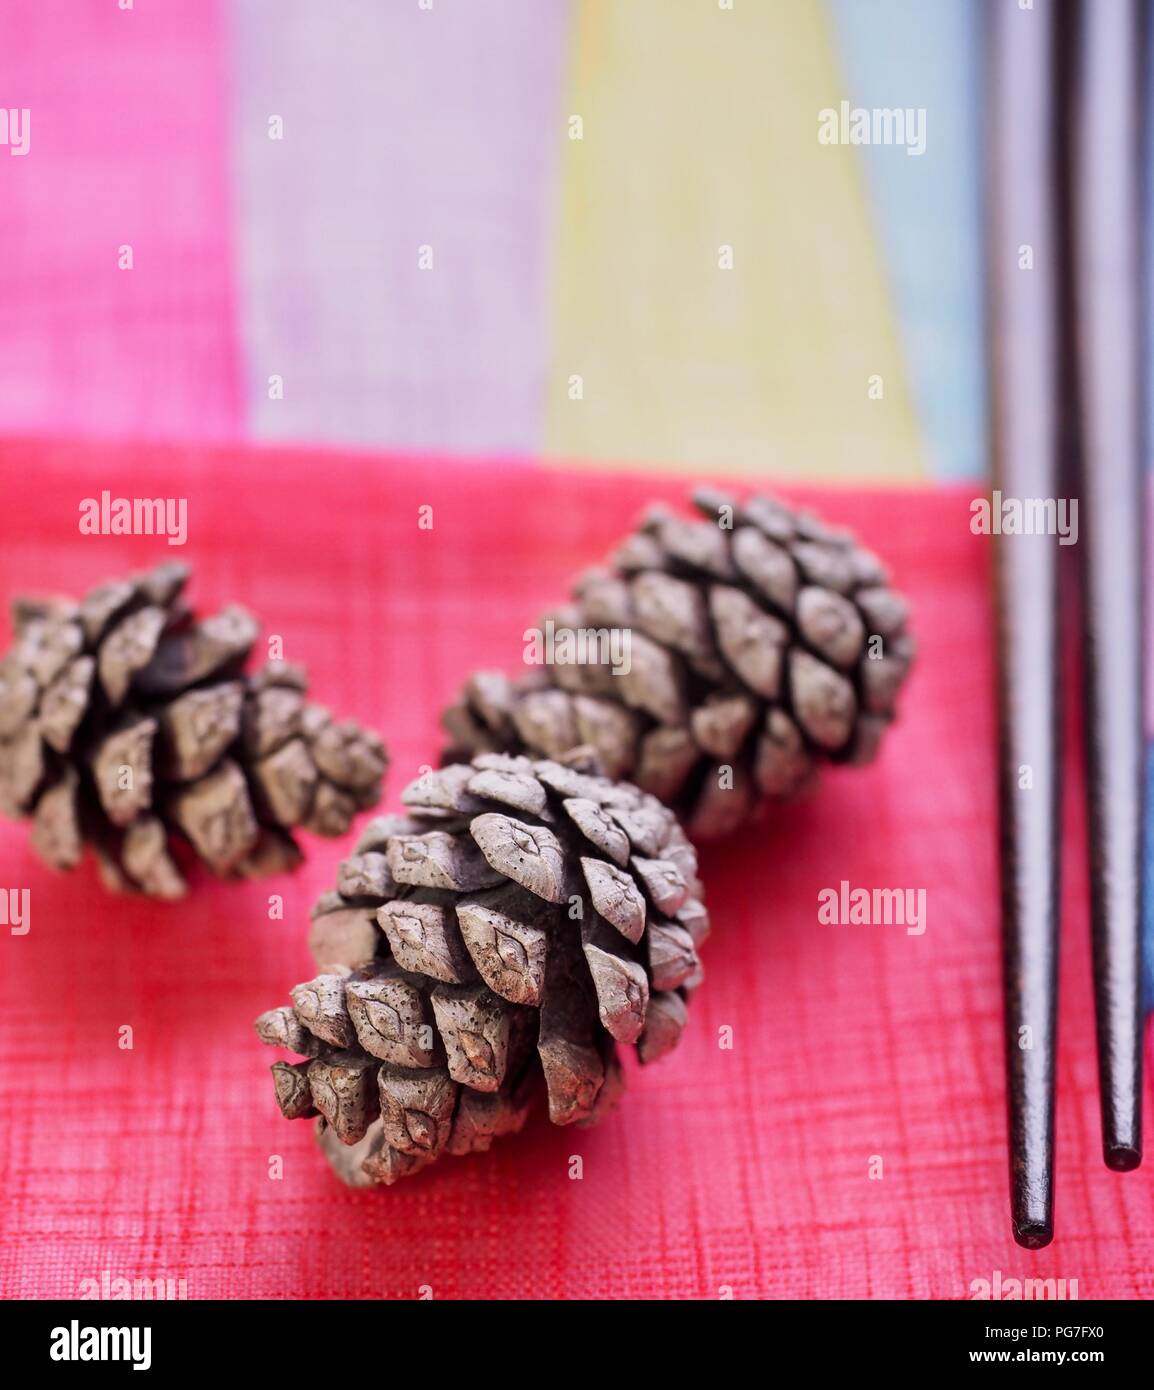 Korea's small pine cones Stock Photo